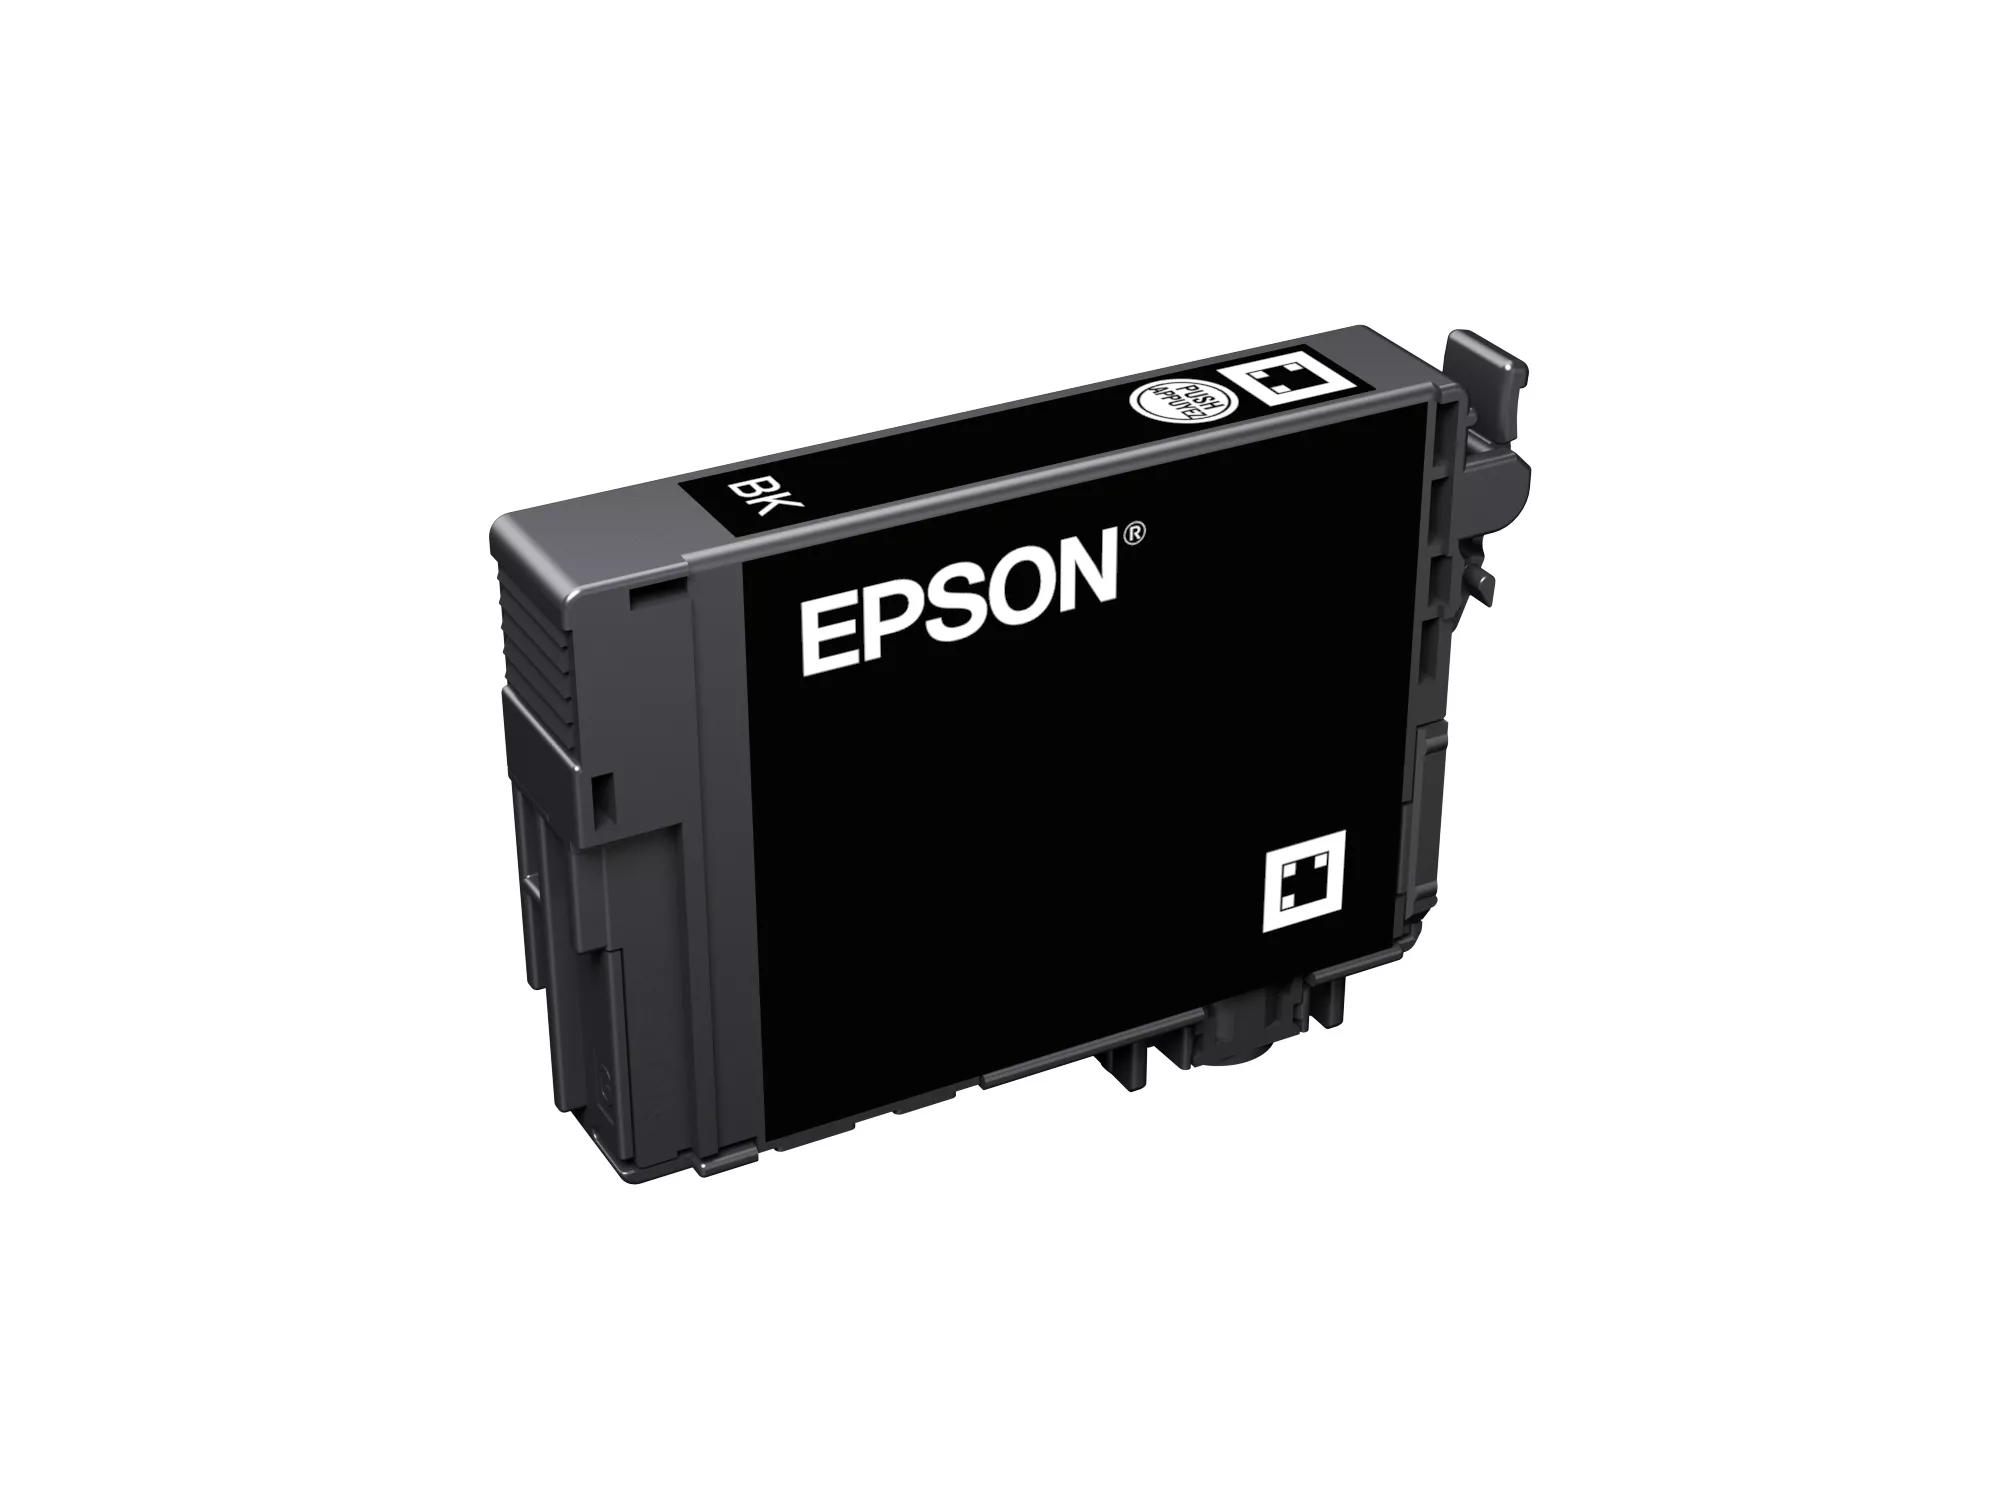 Vente EPSON Singlepack Black 502XL Ink Epson au meilleur prix - visuel 2